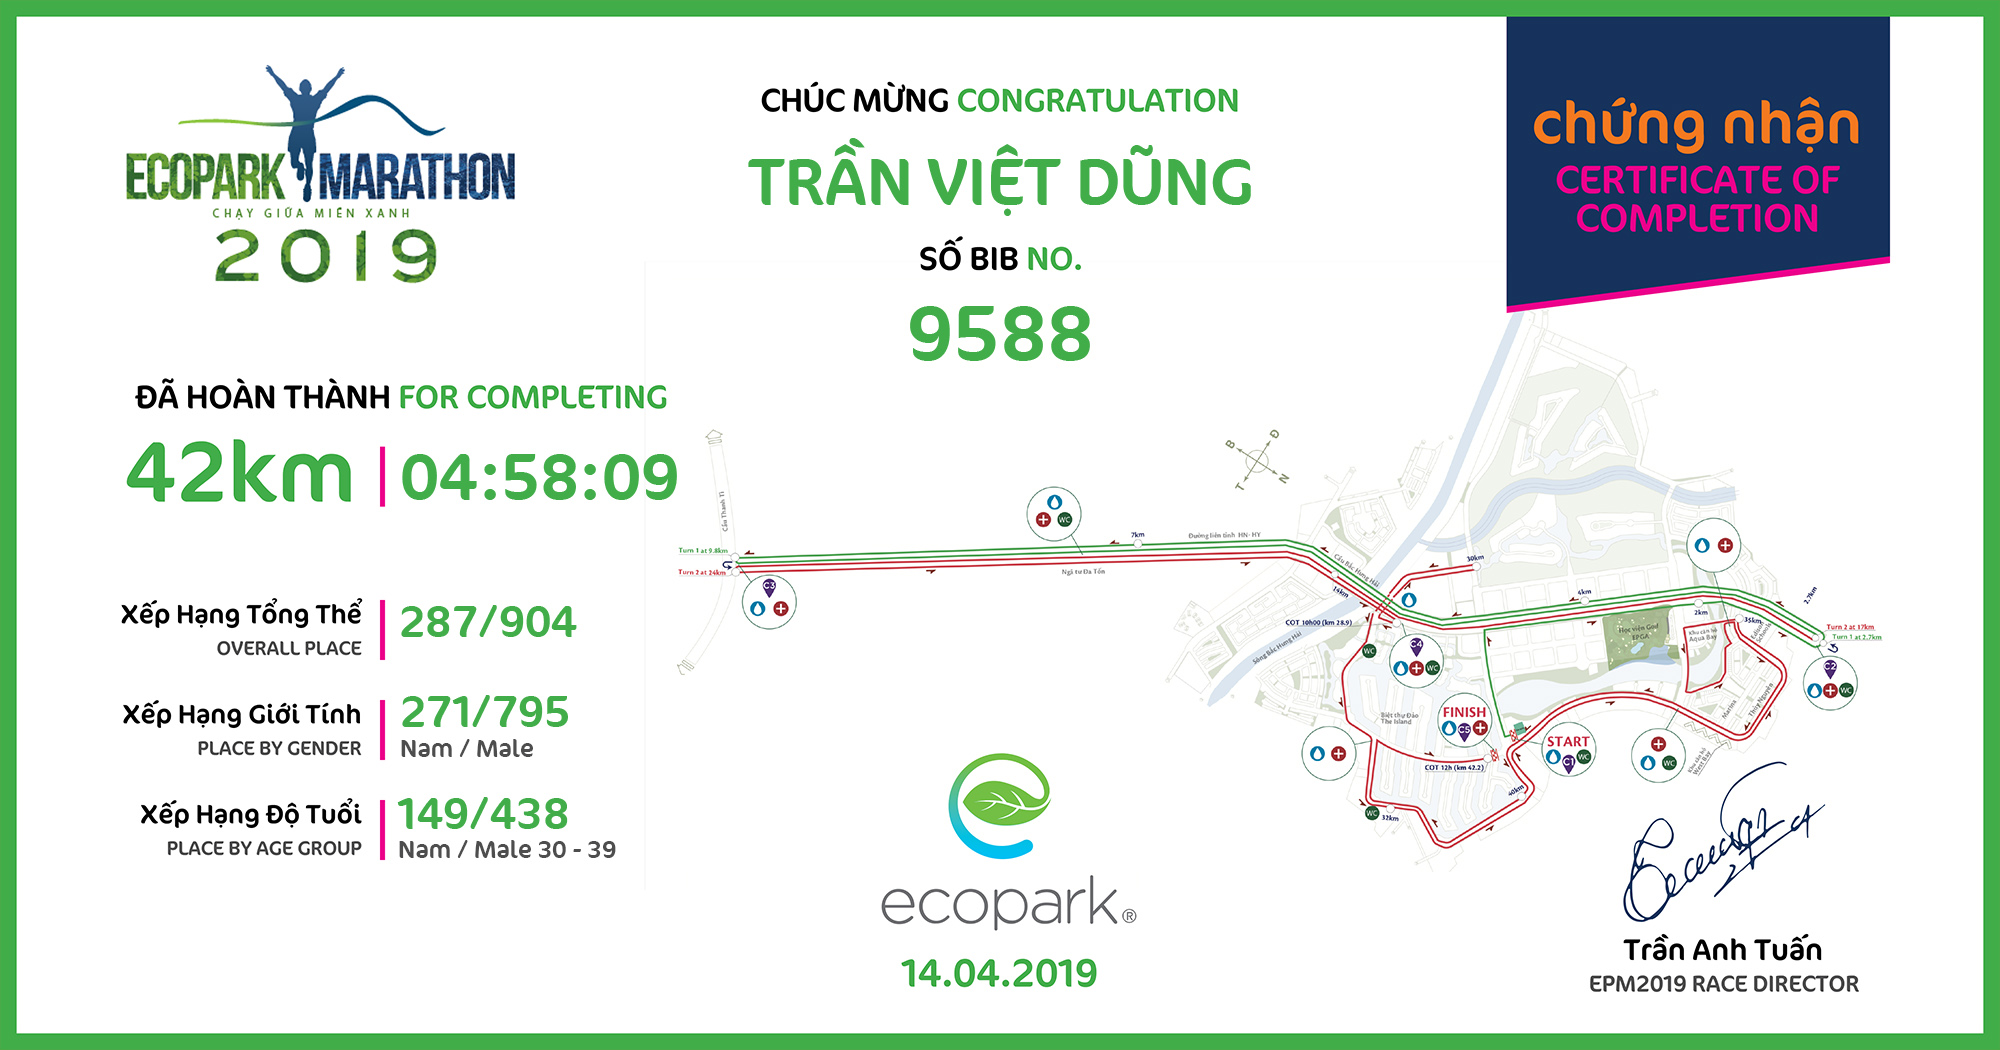 9588 - Trần Việt Dũng